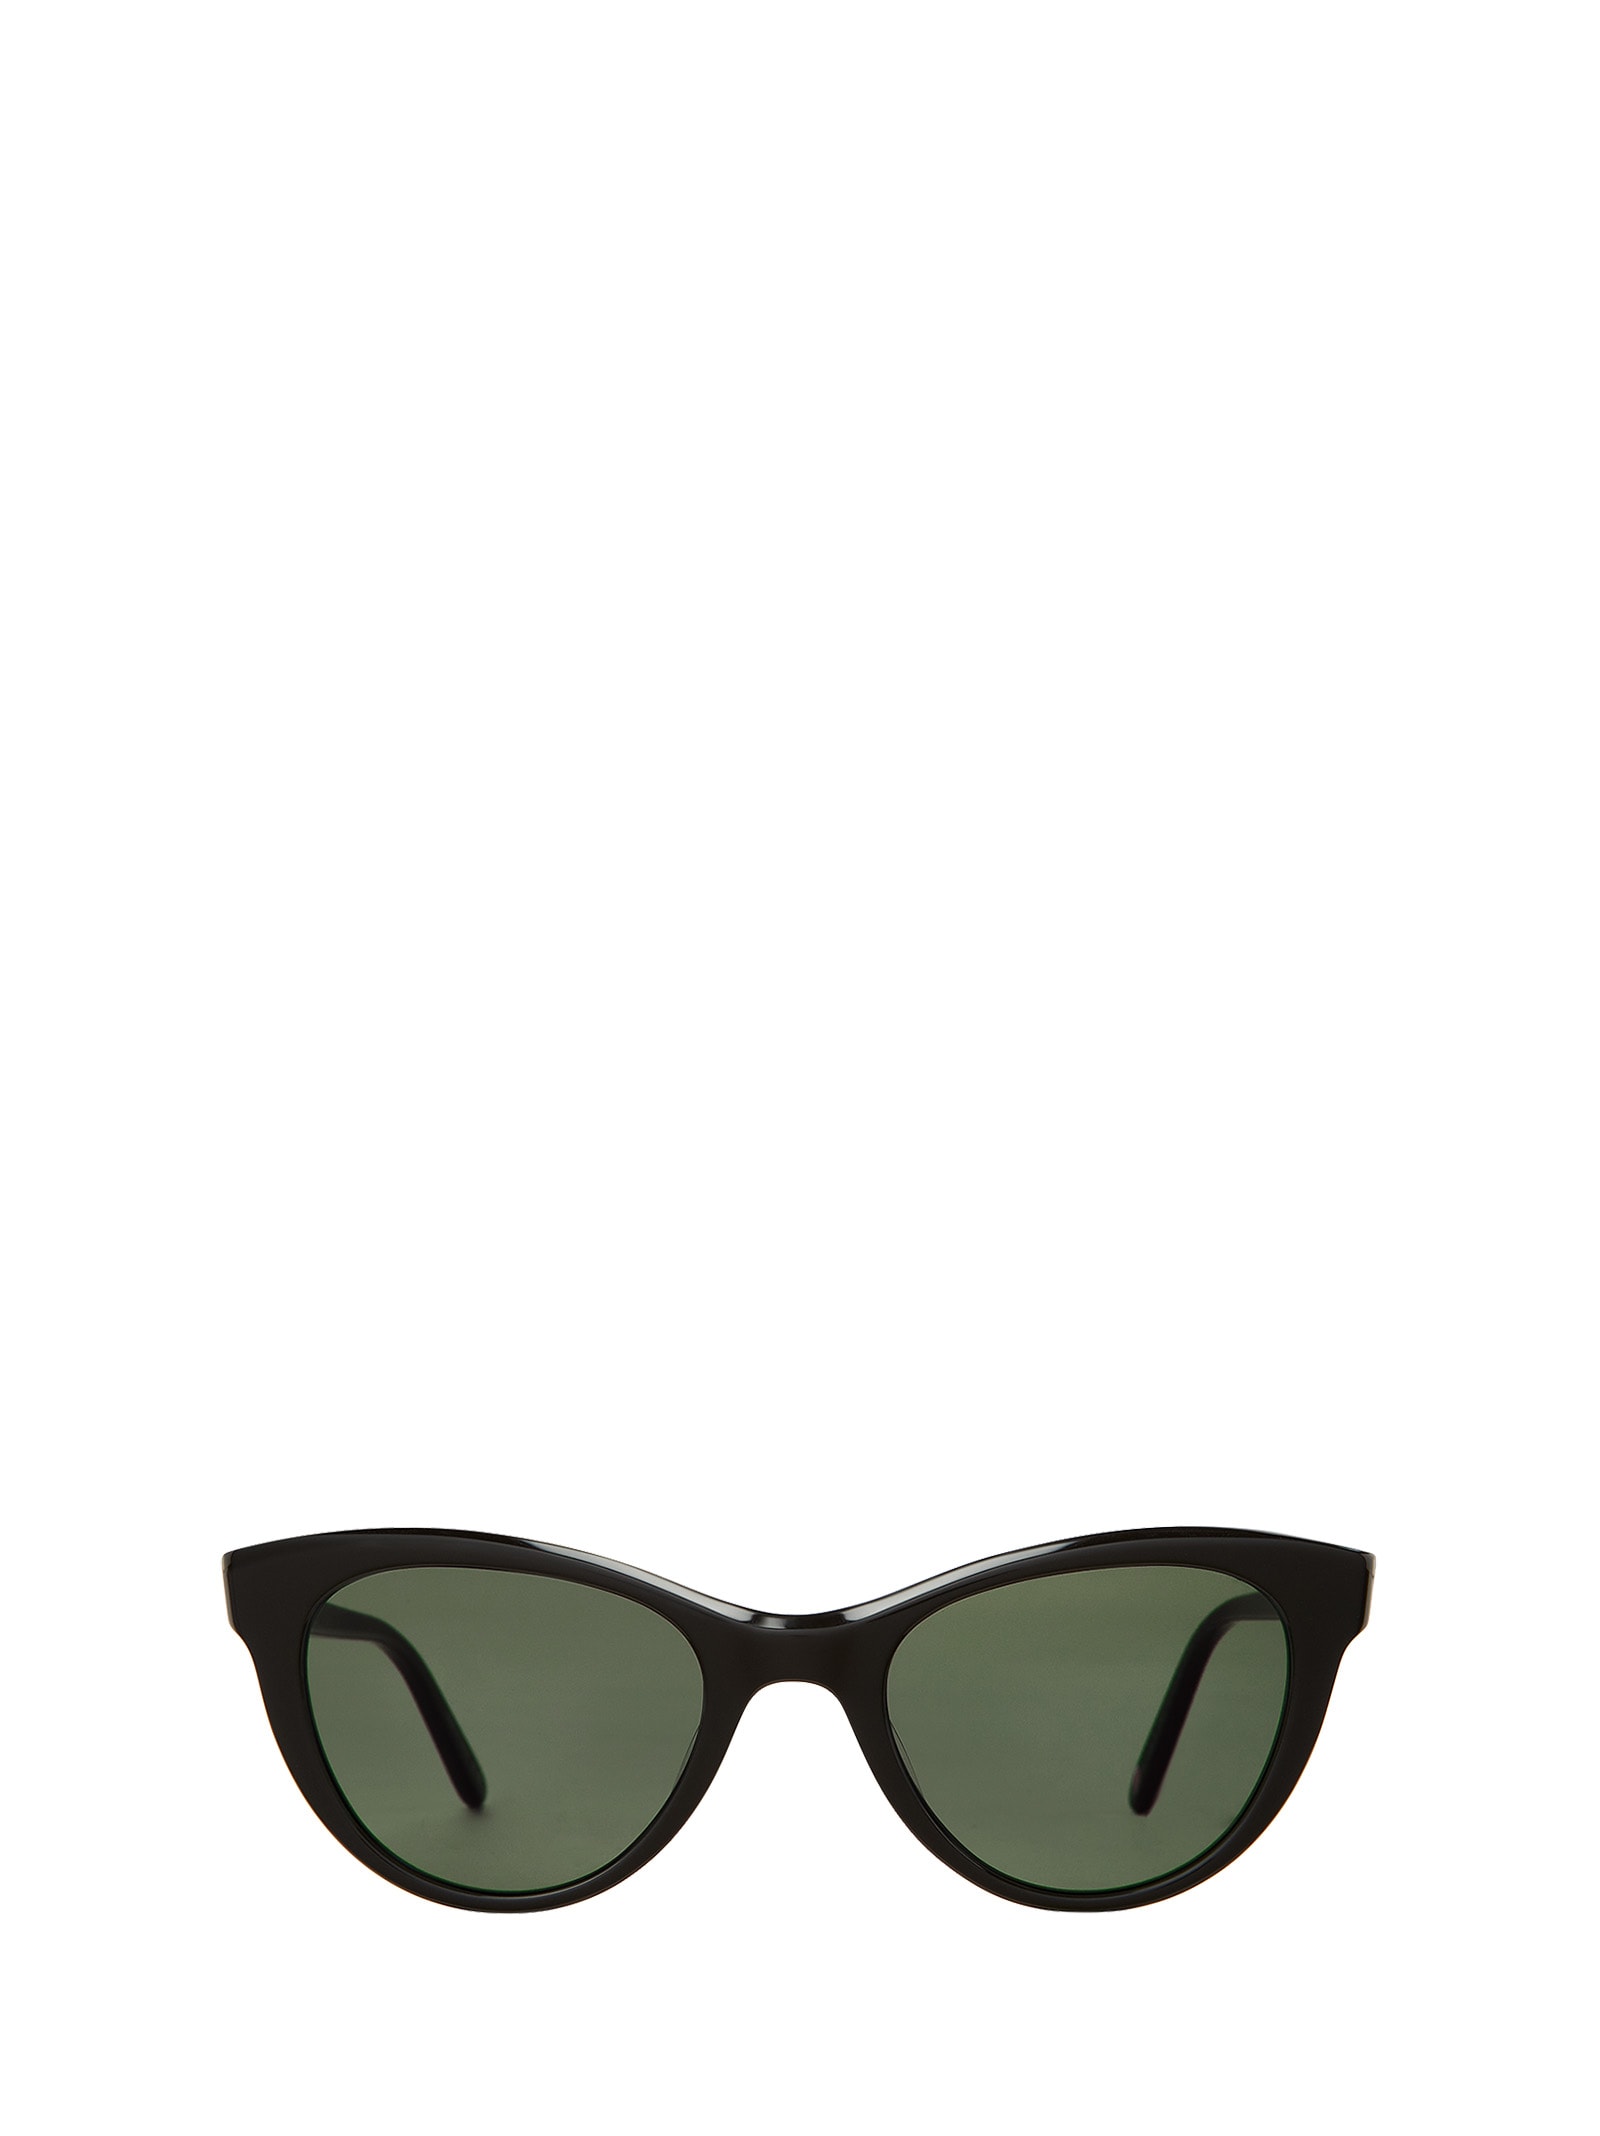 Glco X Clare V. Sun Bio Black Sunglasses